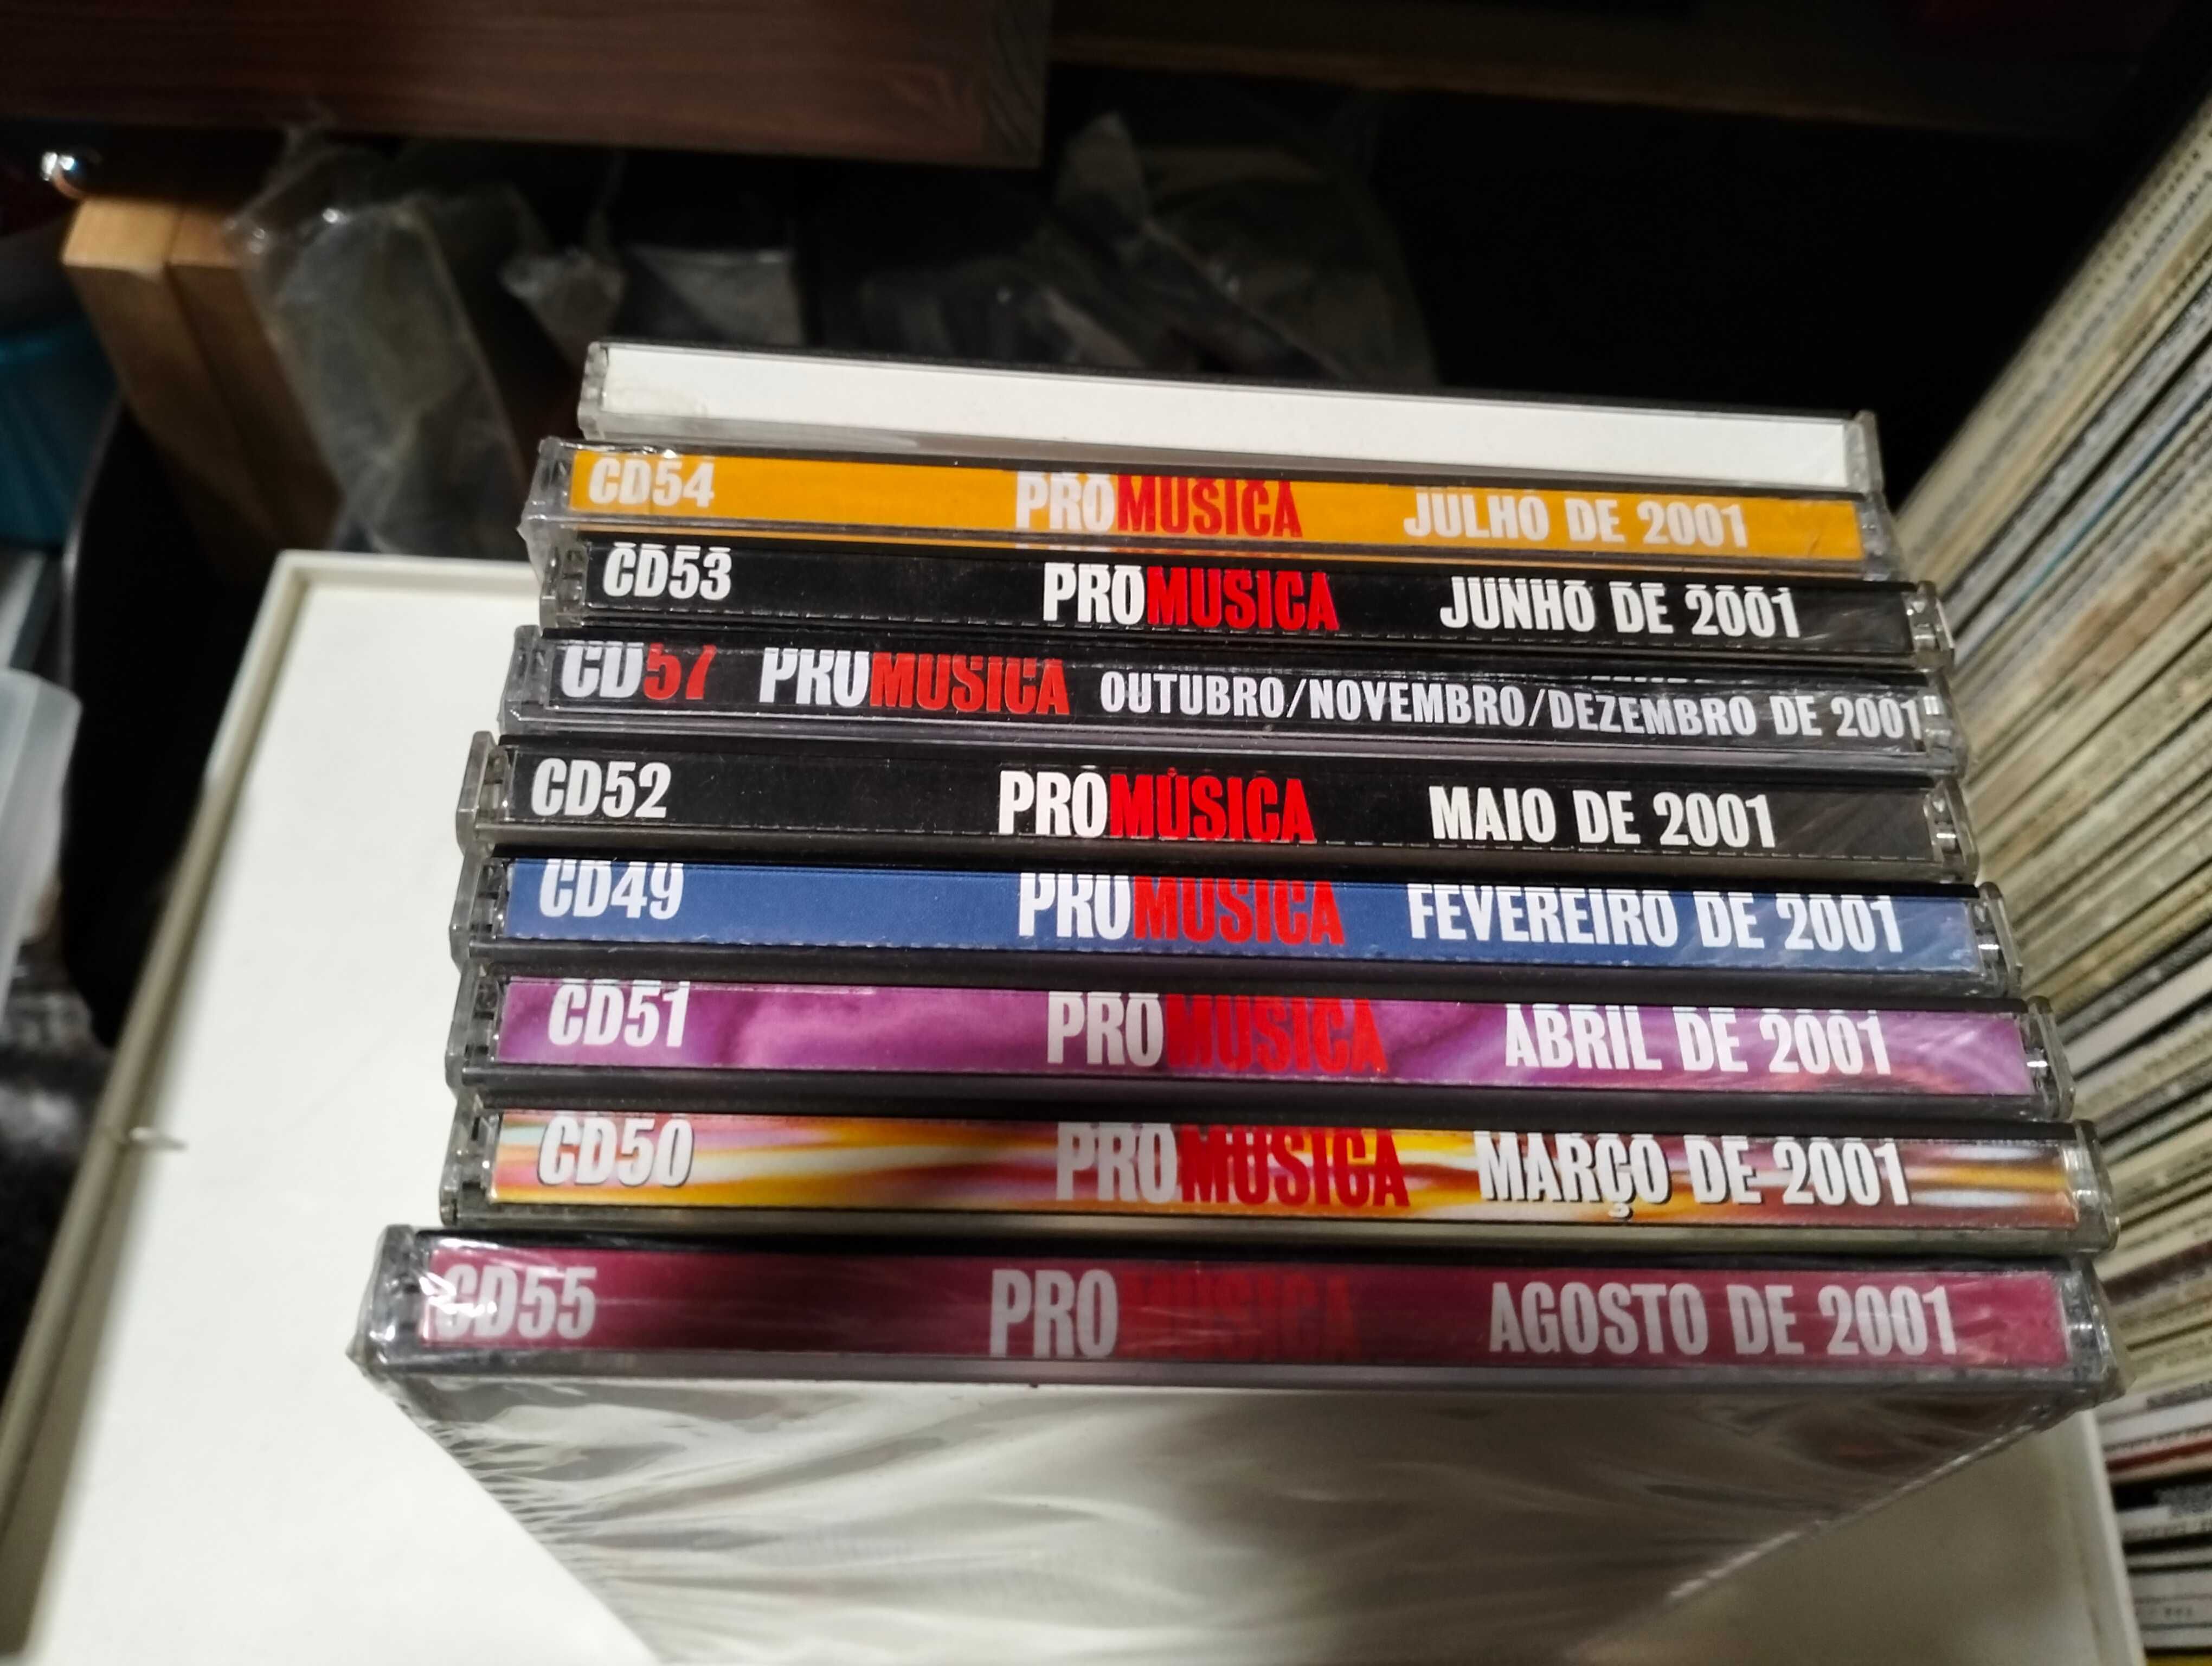 9 CDs Promúsica musica e samples